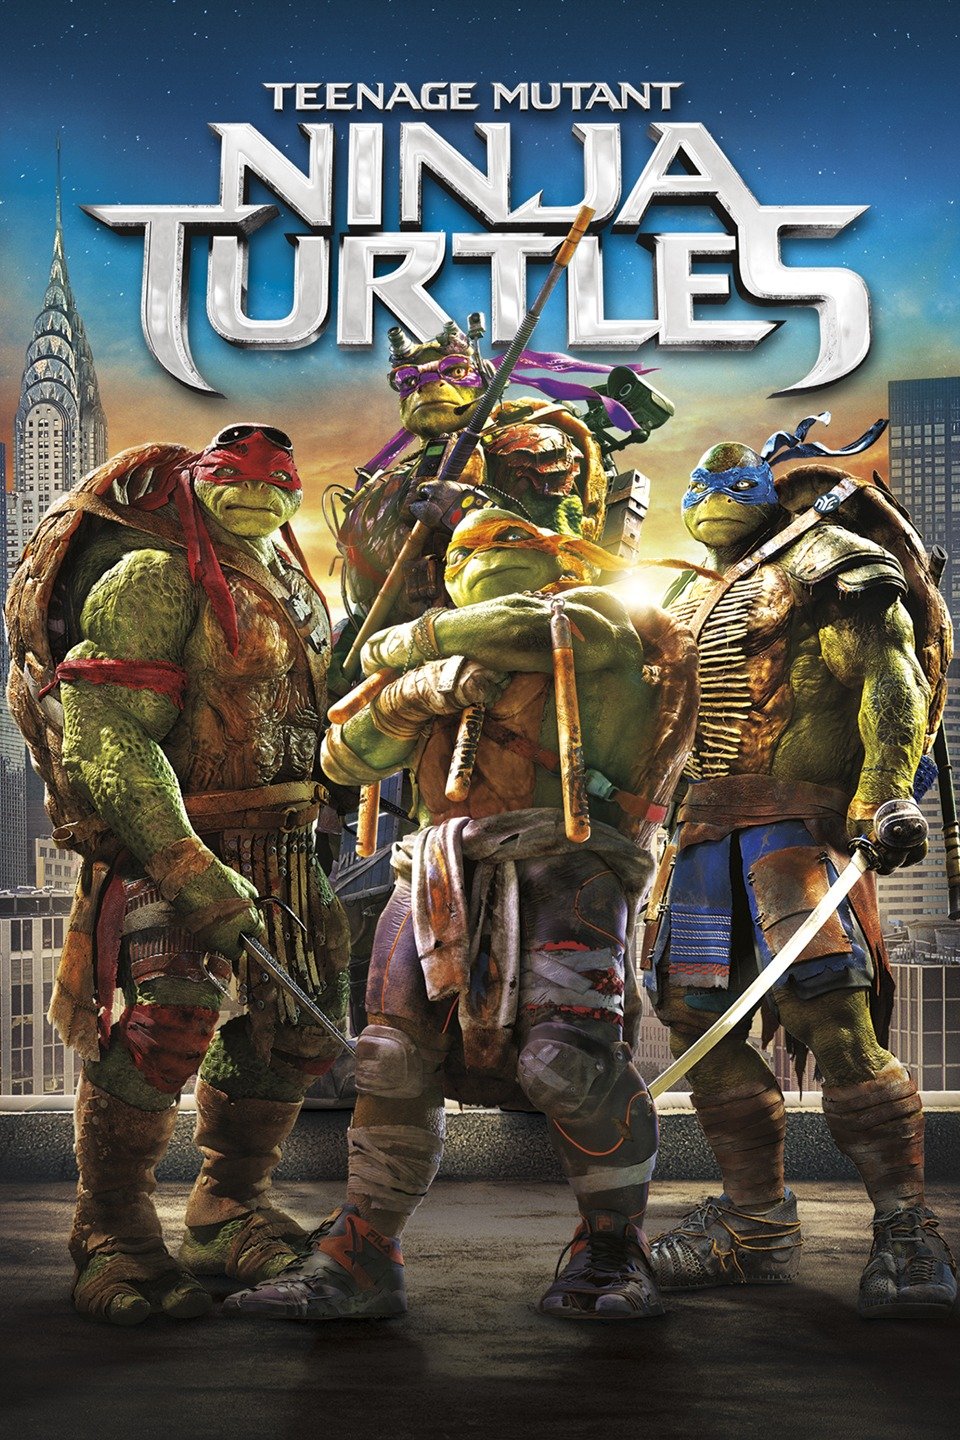 FFC: Teenage Mutant Ninja Turtles (LOW SENSORY)